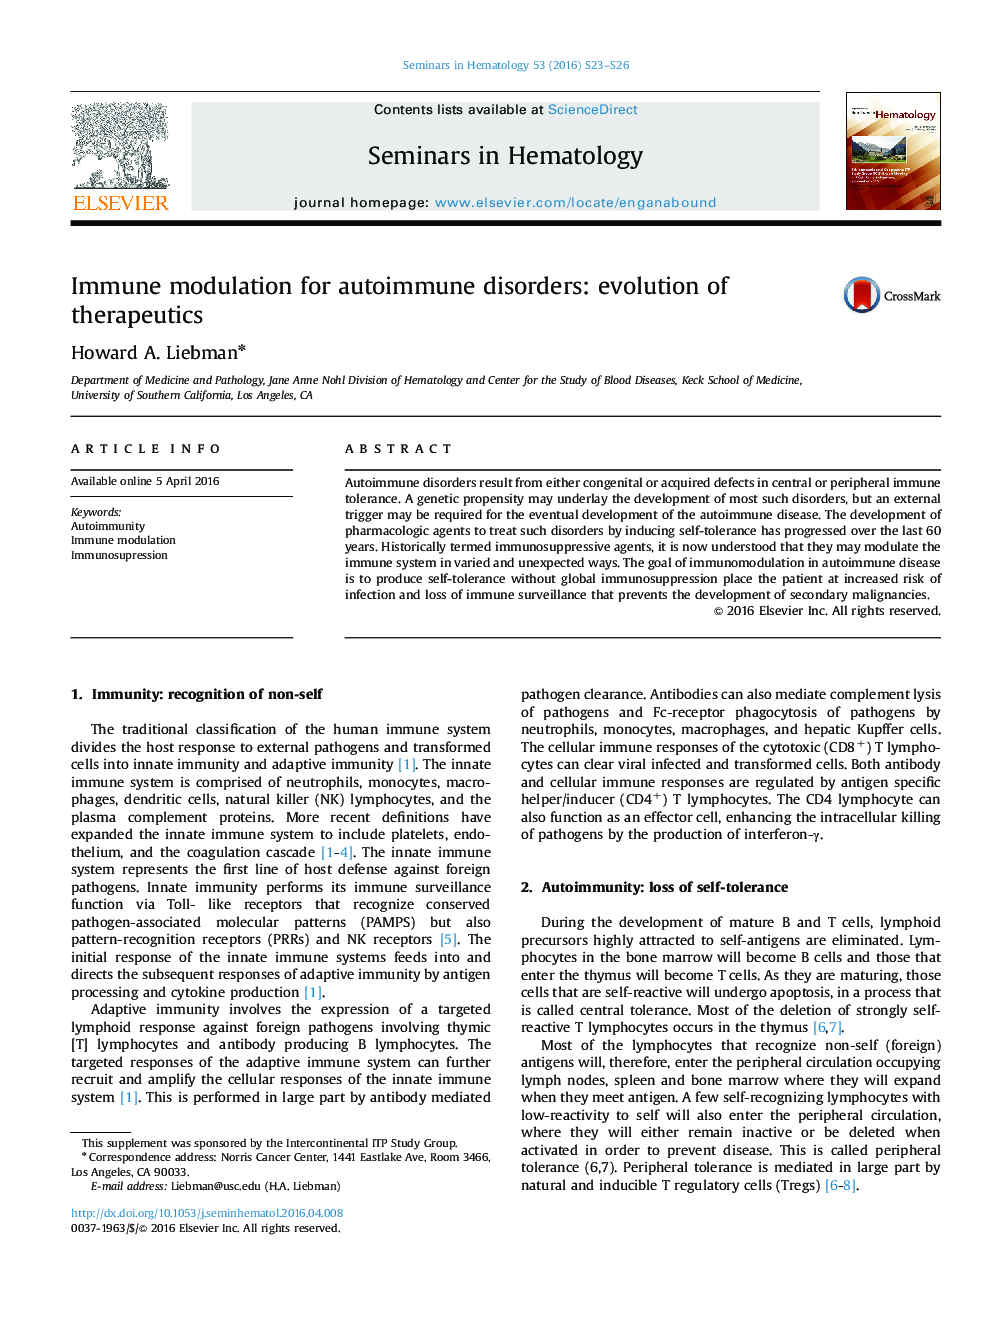 Immune modulation for autoimmune disorders: evolution of therapeutics 